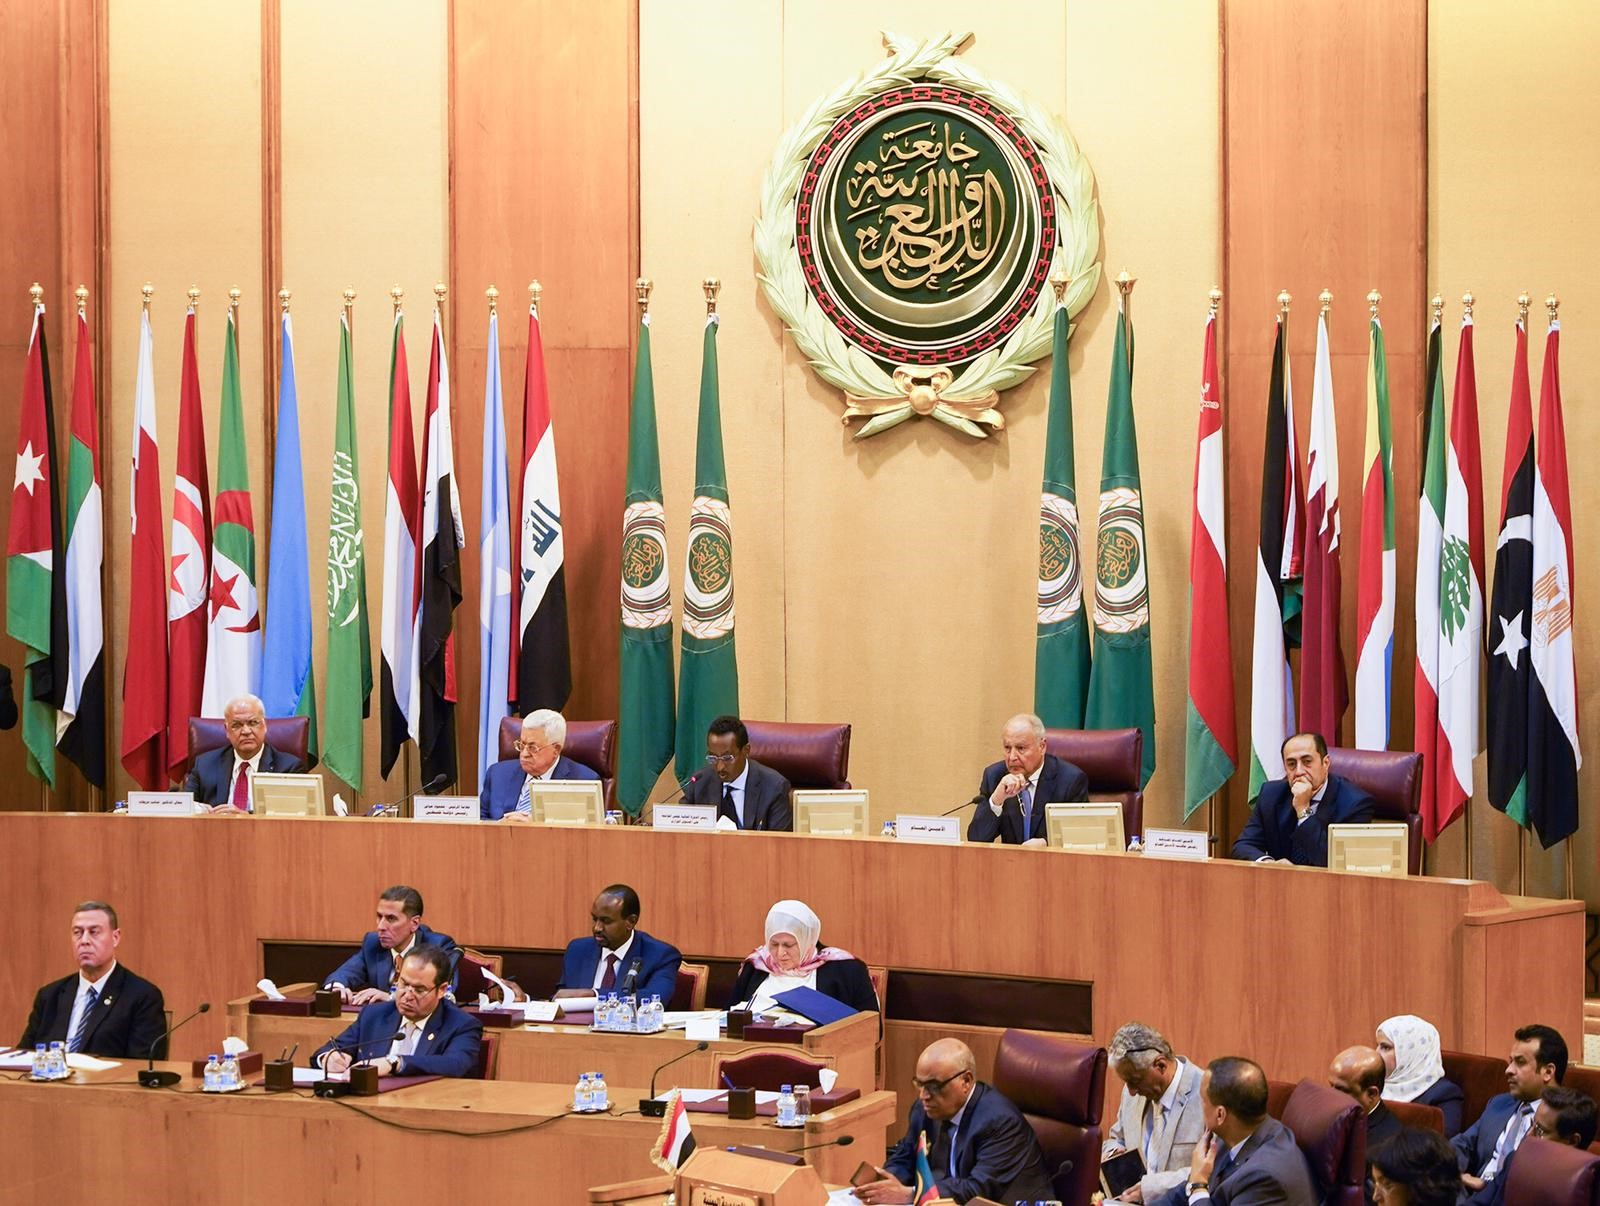 يقصد بالعالم العربي الدول الأعضاء في جامعة الدول العربية وعددها